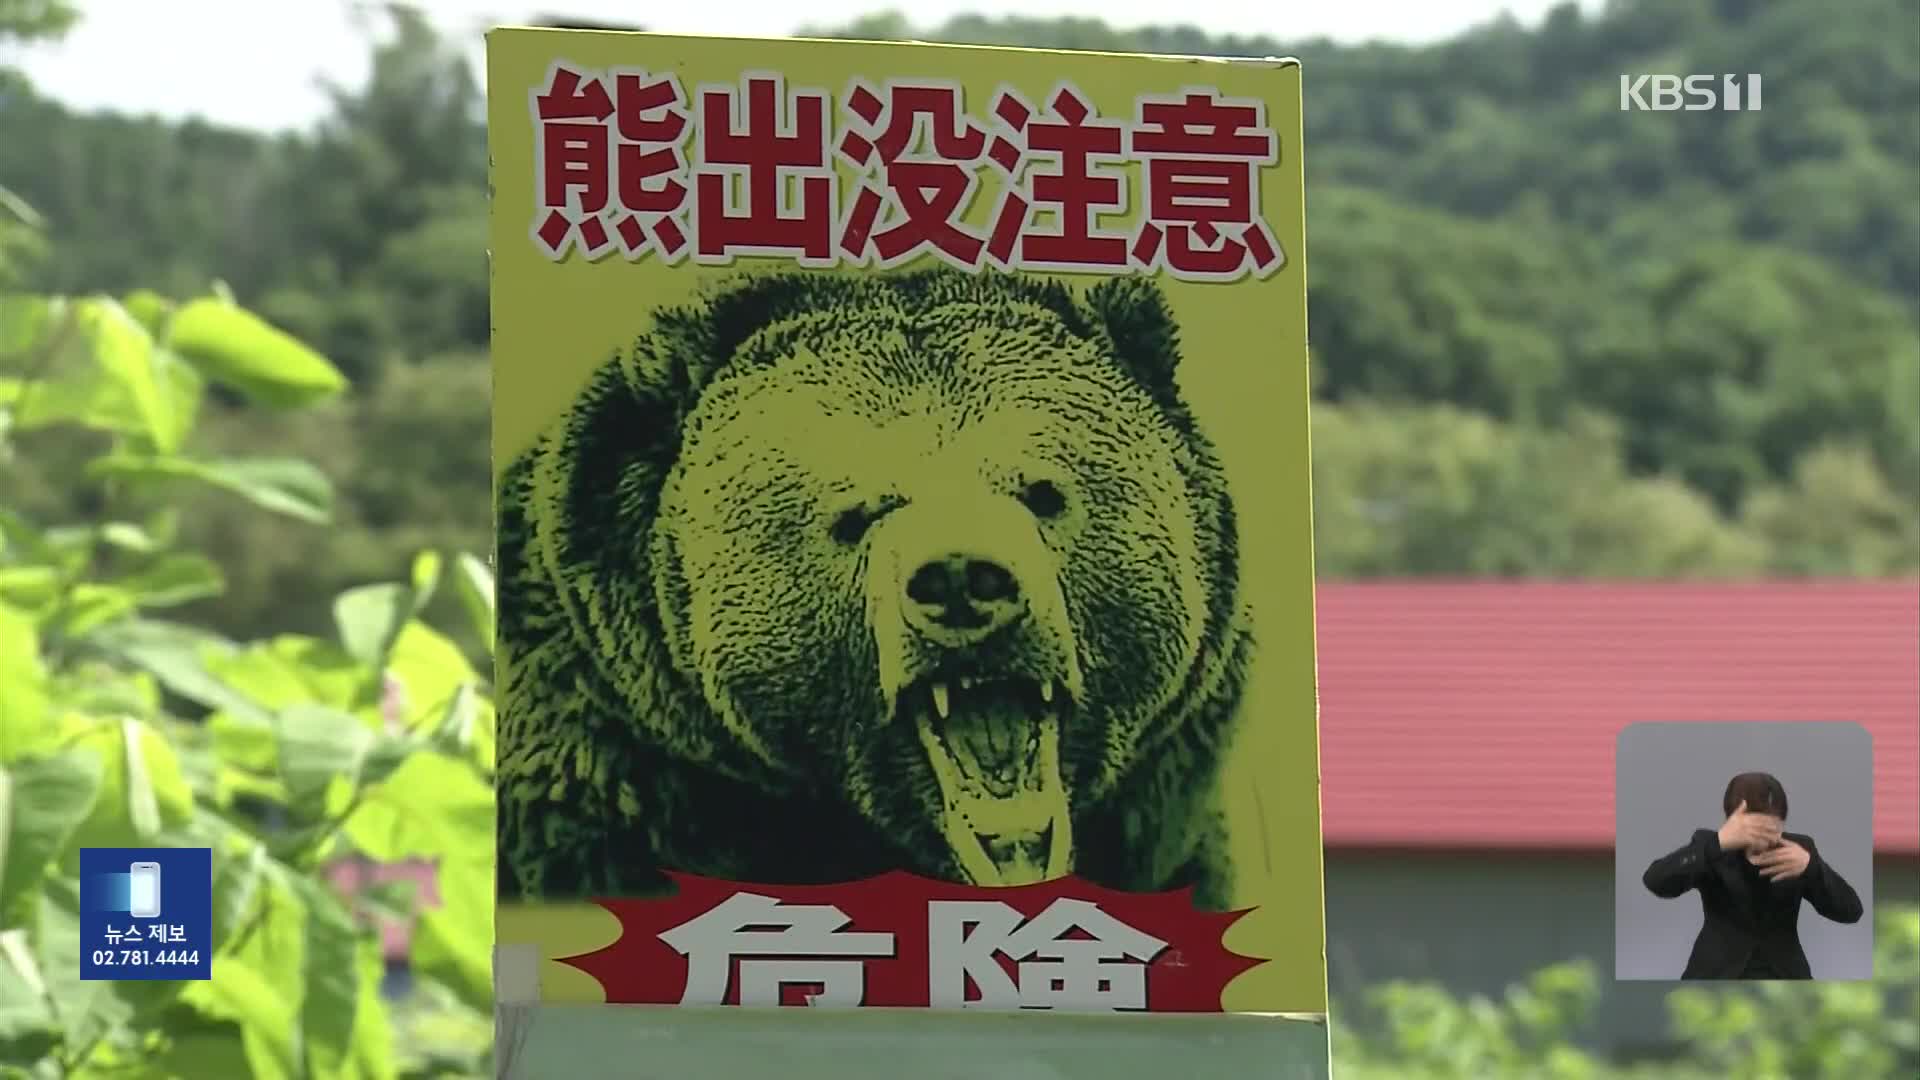 주택가 덮친 일본 곰, 피해 최다…“여행객도 주의해야”